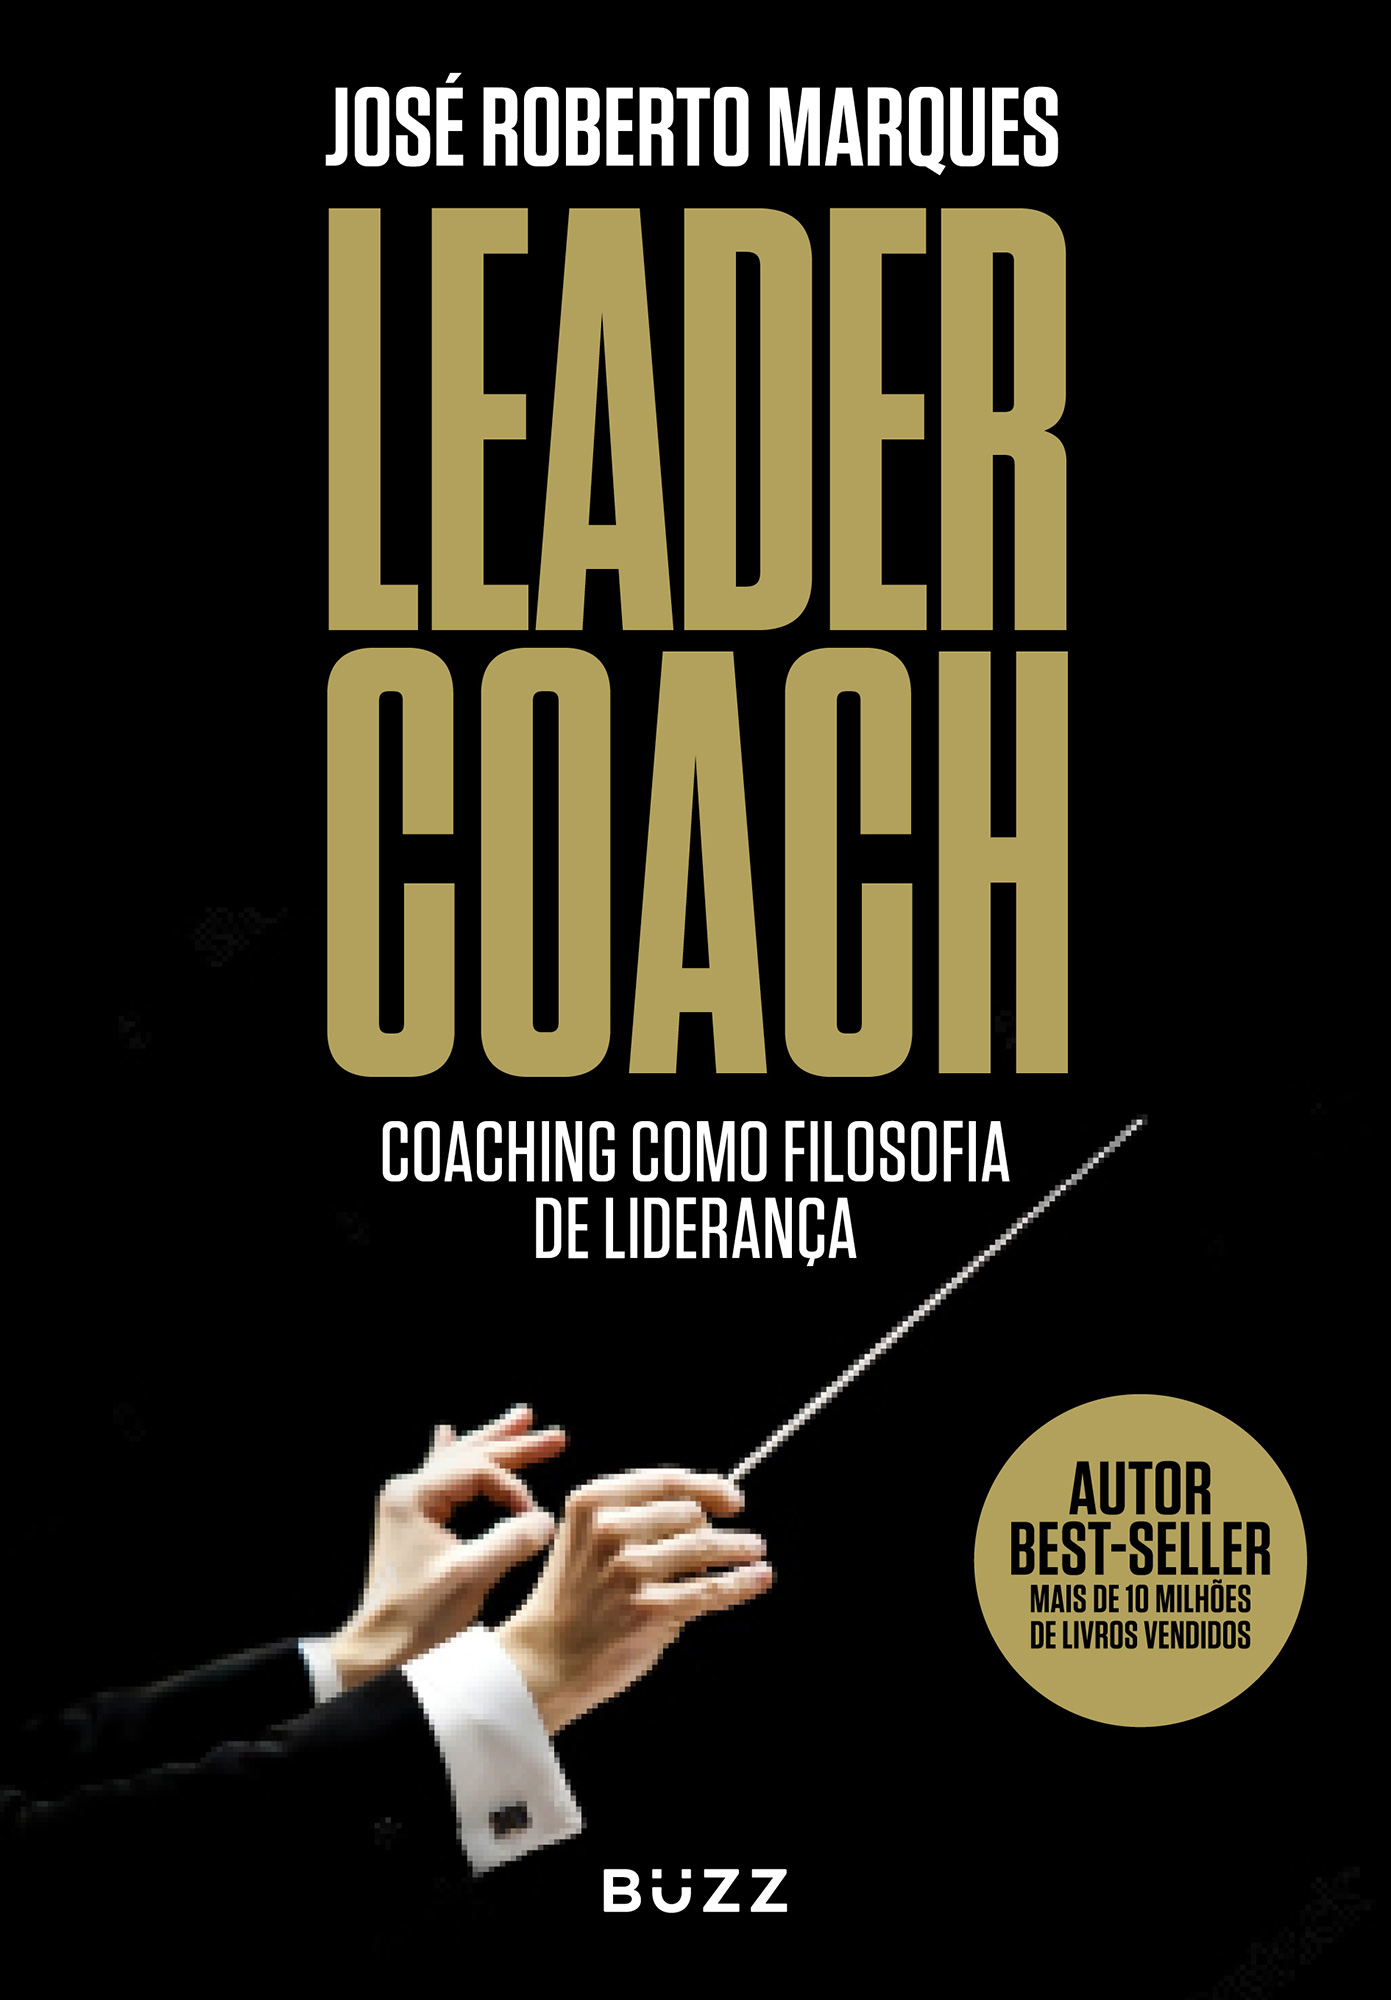 Leader Coach